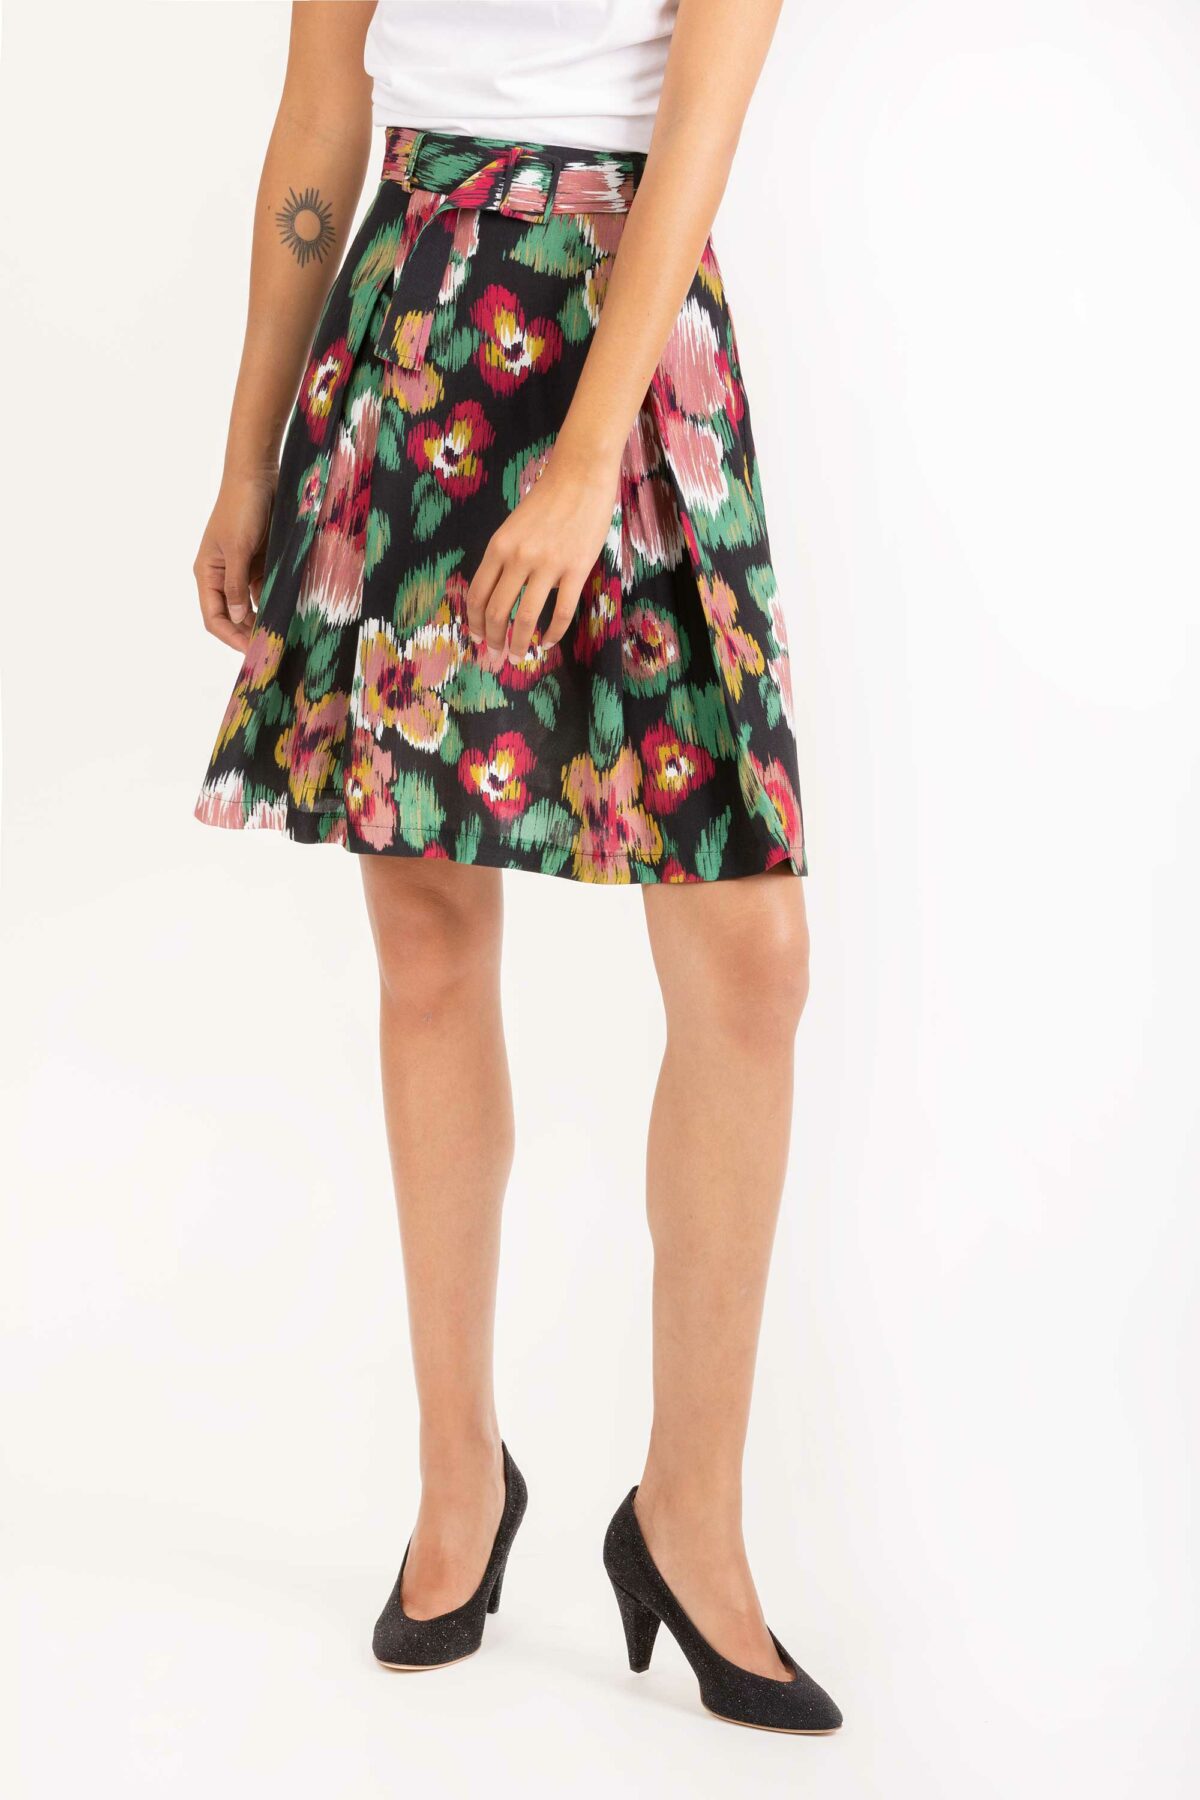 jonquille-mini-skirt-belt-flower-print-lapetitefrancaise-matchboxathens